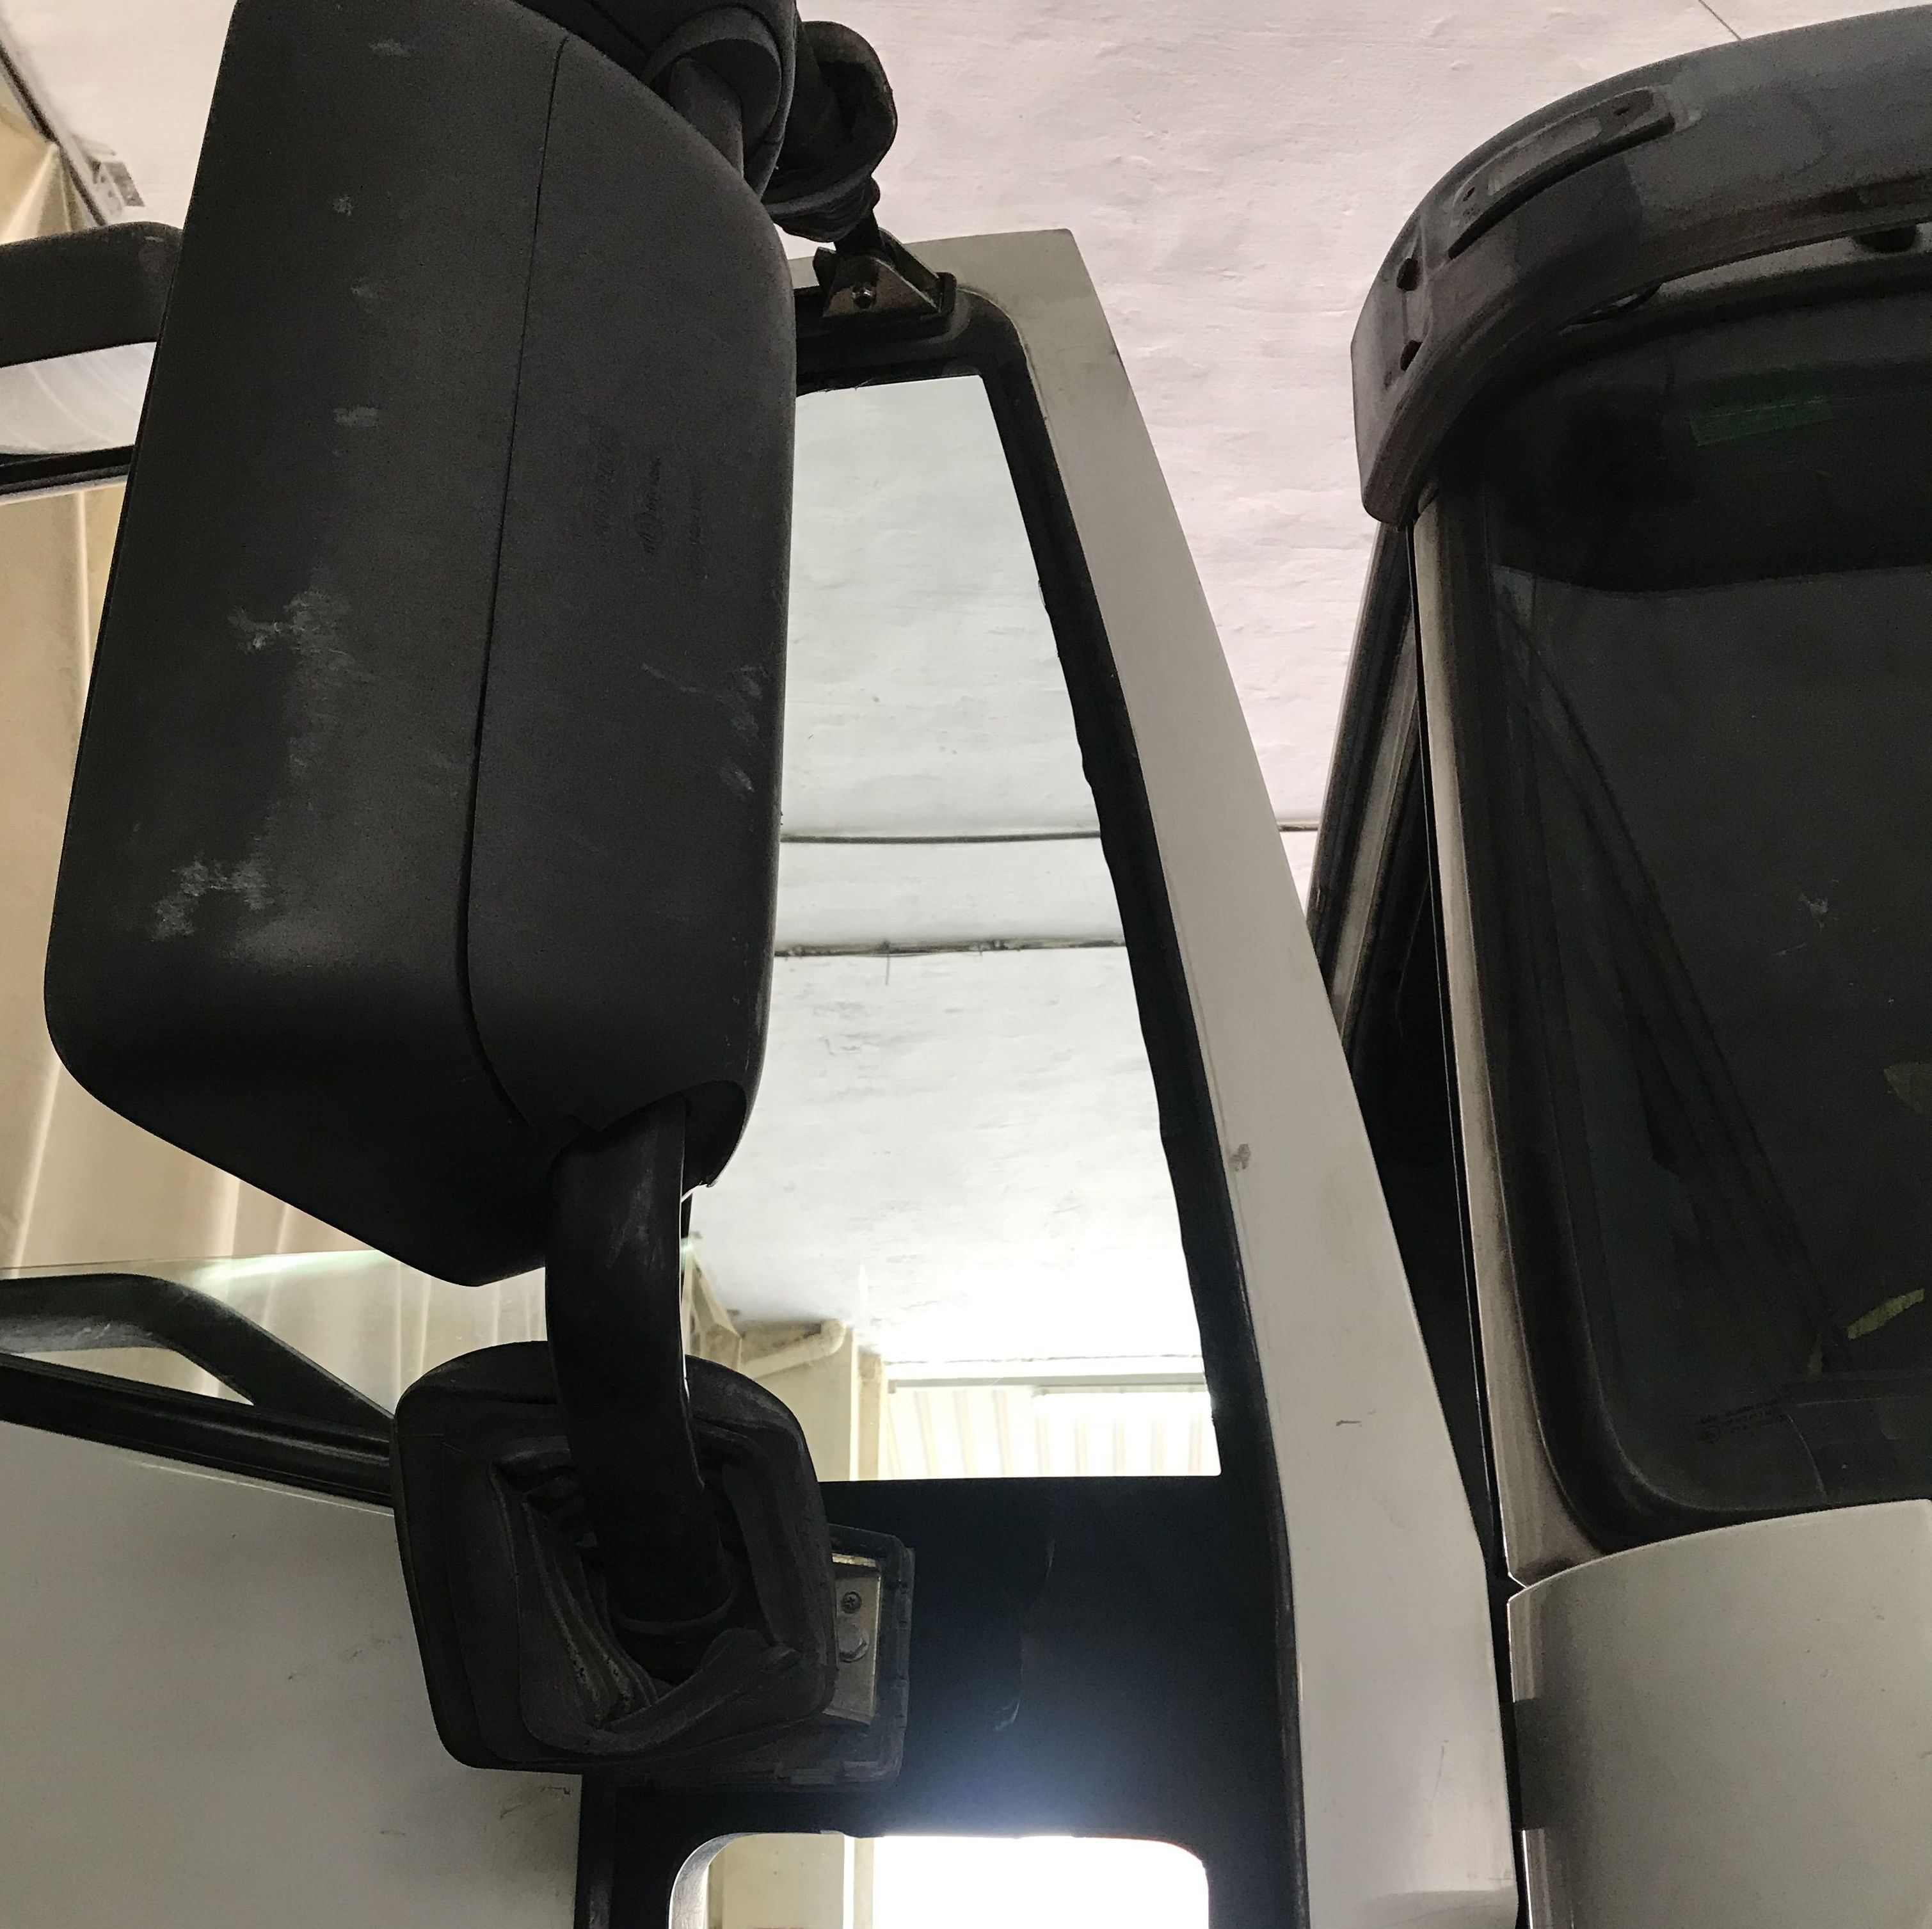 Cambio de cristal puerta lateral derecha de camión Iveco